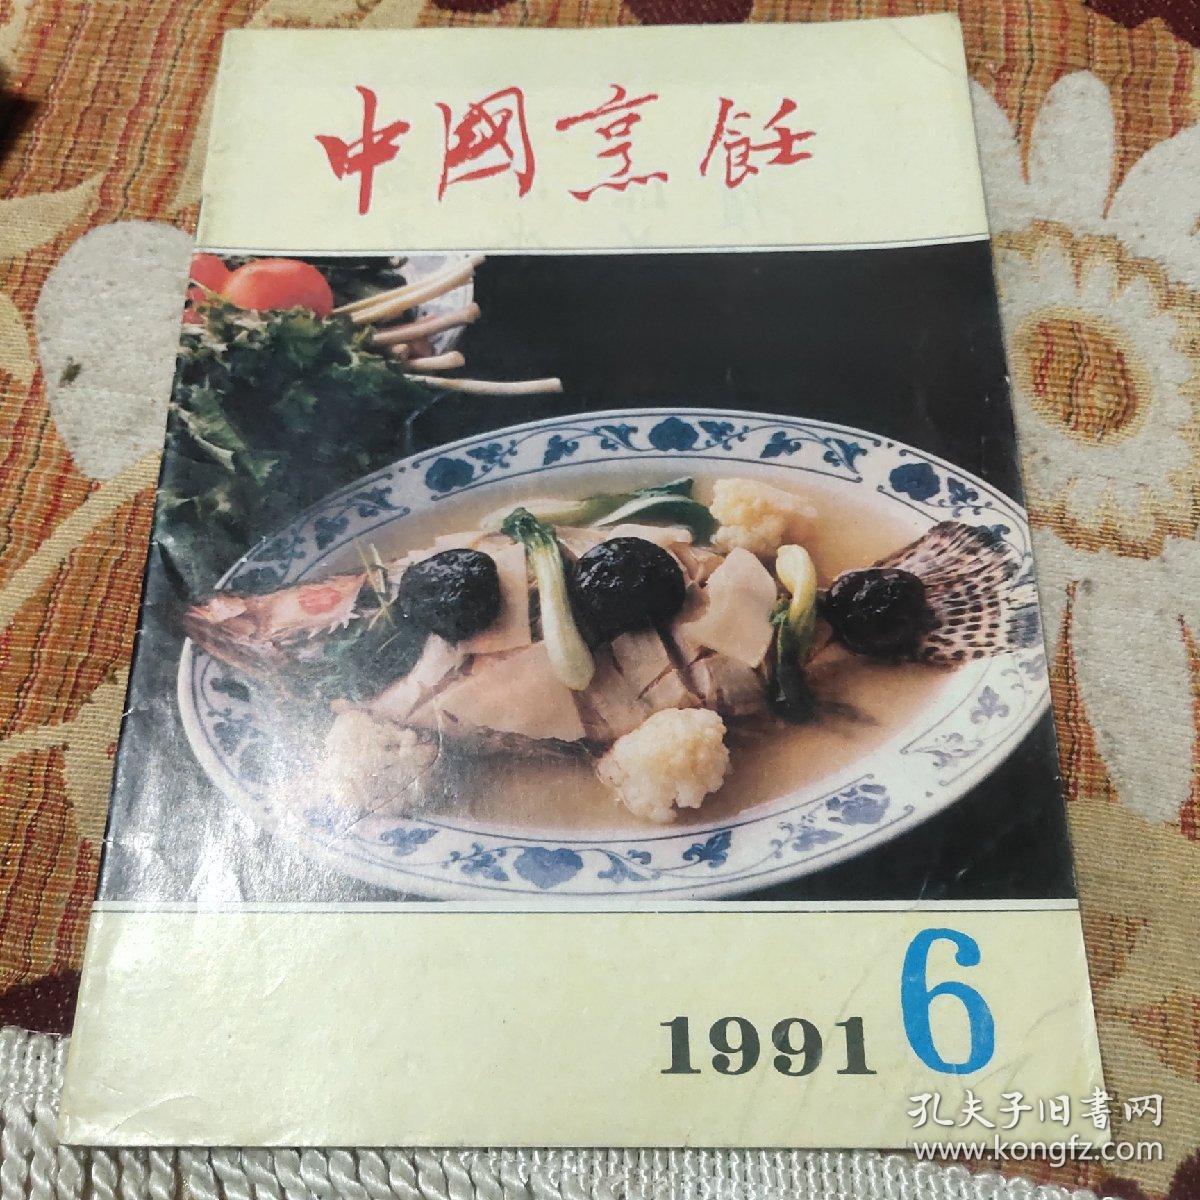 中国烹饪1991年6月（创刊30年来《中国烹饪》始终立足于推进中国餐饮业的发展，引领“食尚文化”的风潮，受到了业内人士及读者的广泛关注和好评。
发行量最多、覆盖面最广的餐饮类期刊
《中国烹饪》创刊30年来已累计发行300余期，发行总量4000万册，每期发行量达18万份；是国内唯一一家发行范围覆盖全国所有省市区的餐饮类期刊。）